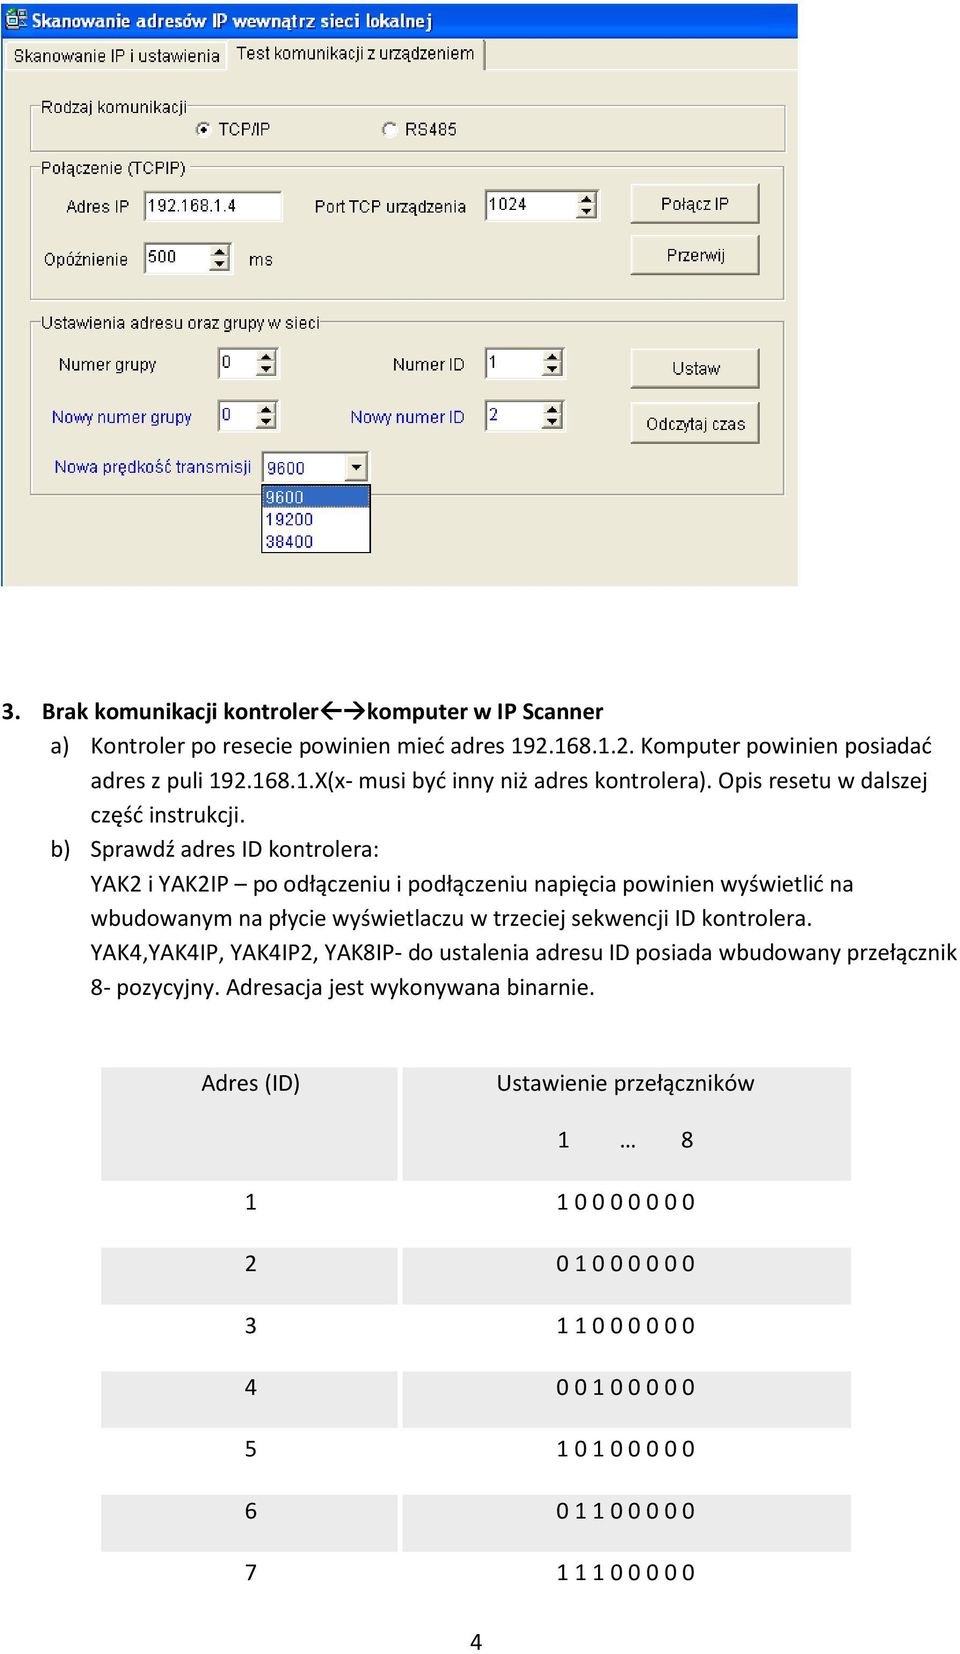 b) Sprawdź adres ID kontrolera: YAK2 i YAK2IP po odłączeniu i podłączeniu napięcia powinien wyświetlić na wbudowanym na płycie wyświetlaczu w trzeciej sekwencji ID